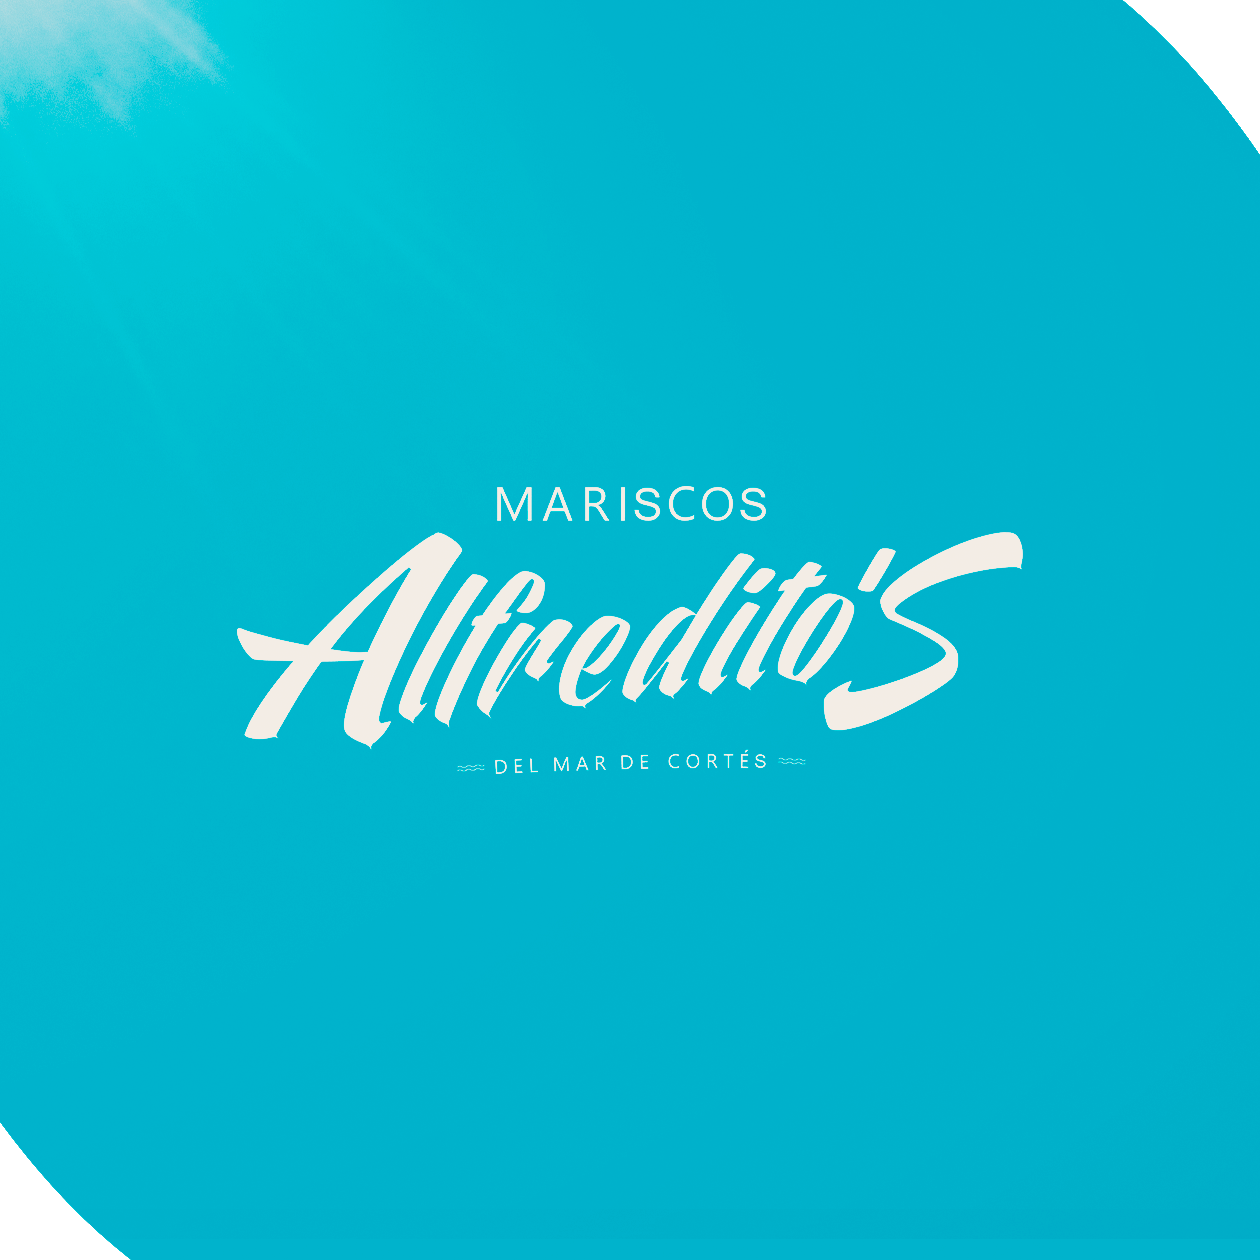 Mariscos Alfreditos